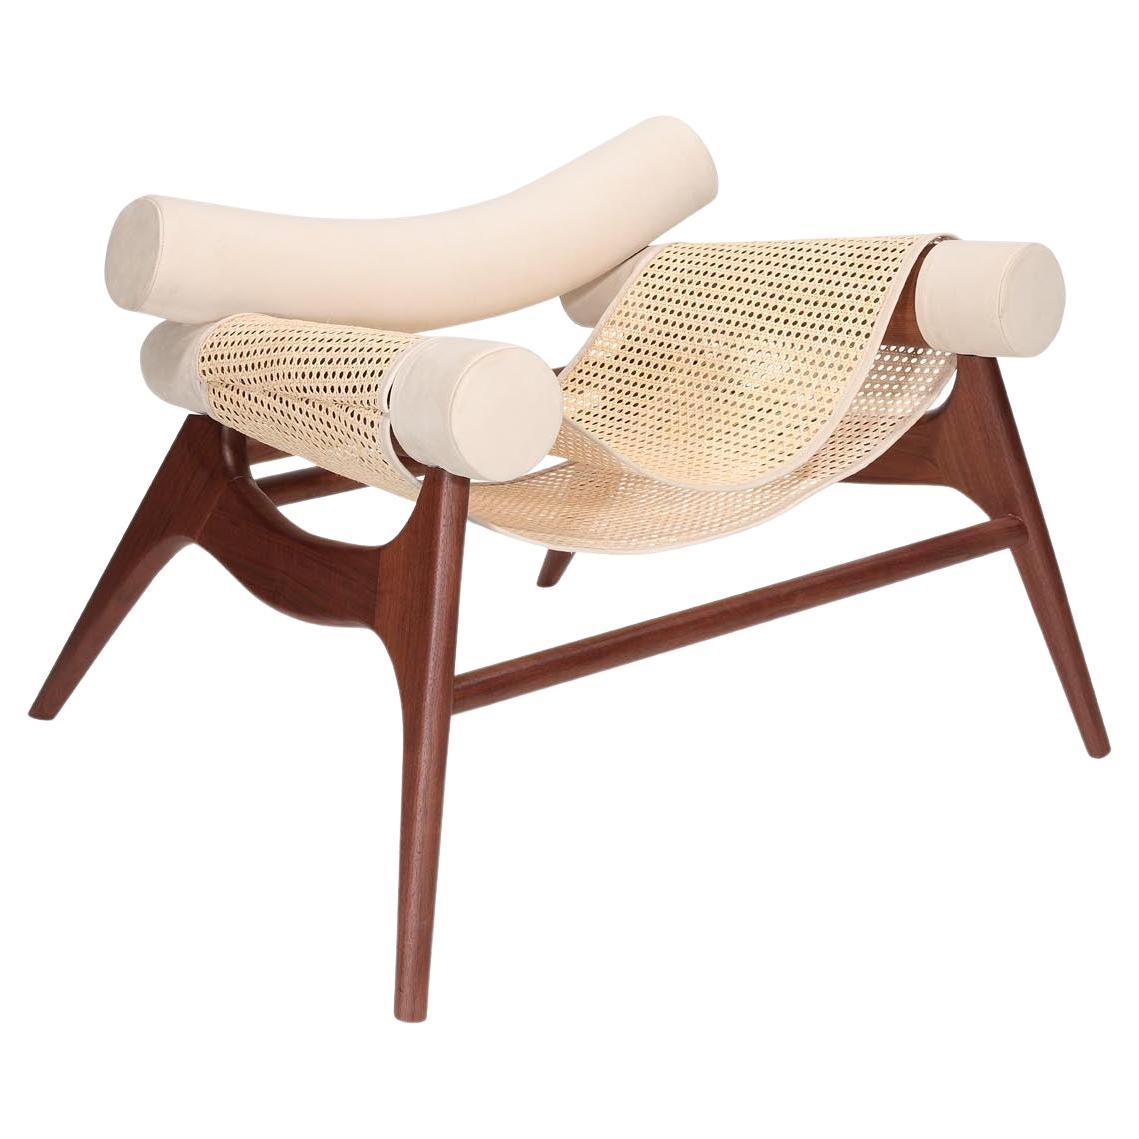 Wonatti Espiunca Armchair, Walnut Wood Armchair, Leather Armchair, Rattan Chair